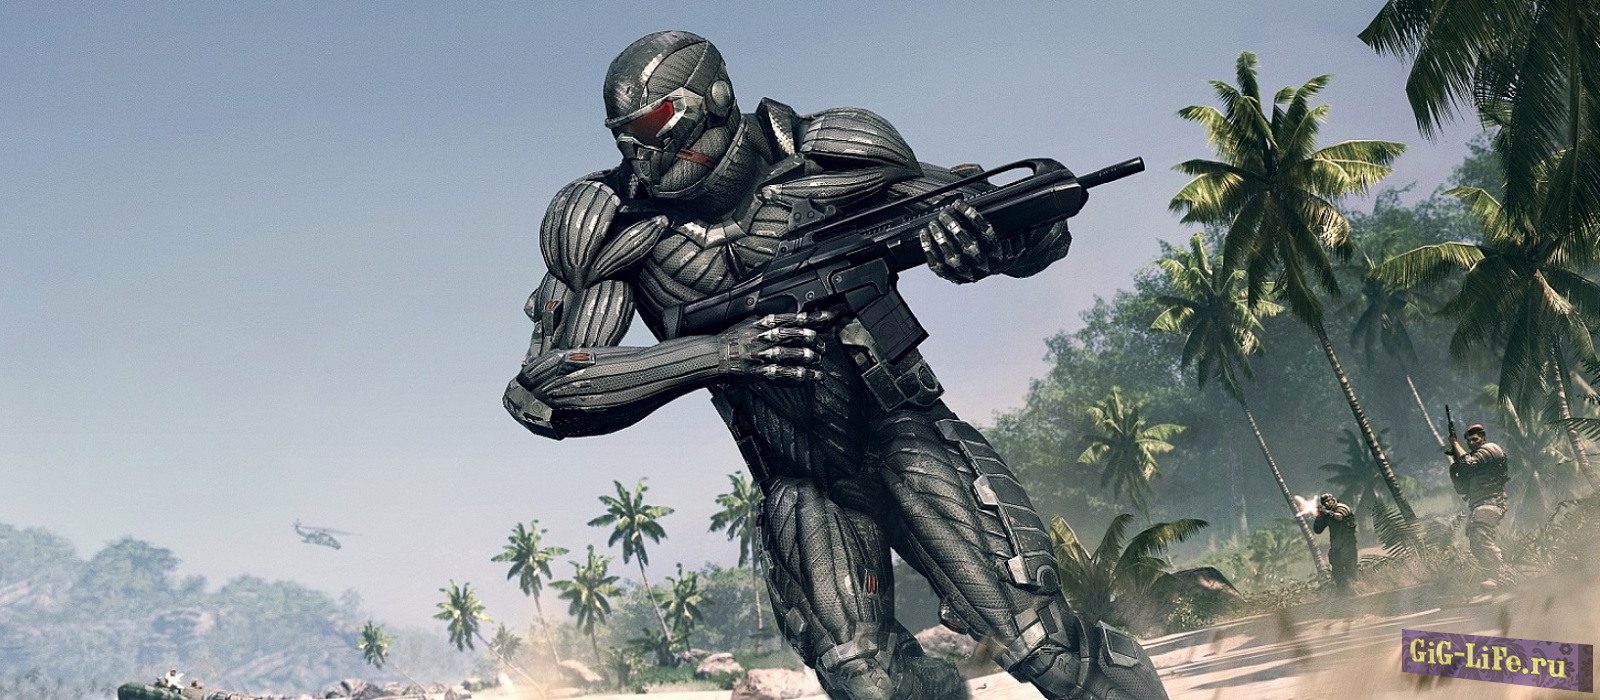 Crysis Remastered — Графику сравнили с бесплатным модом от фанатов